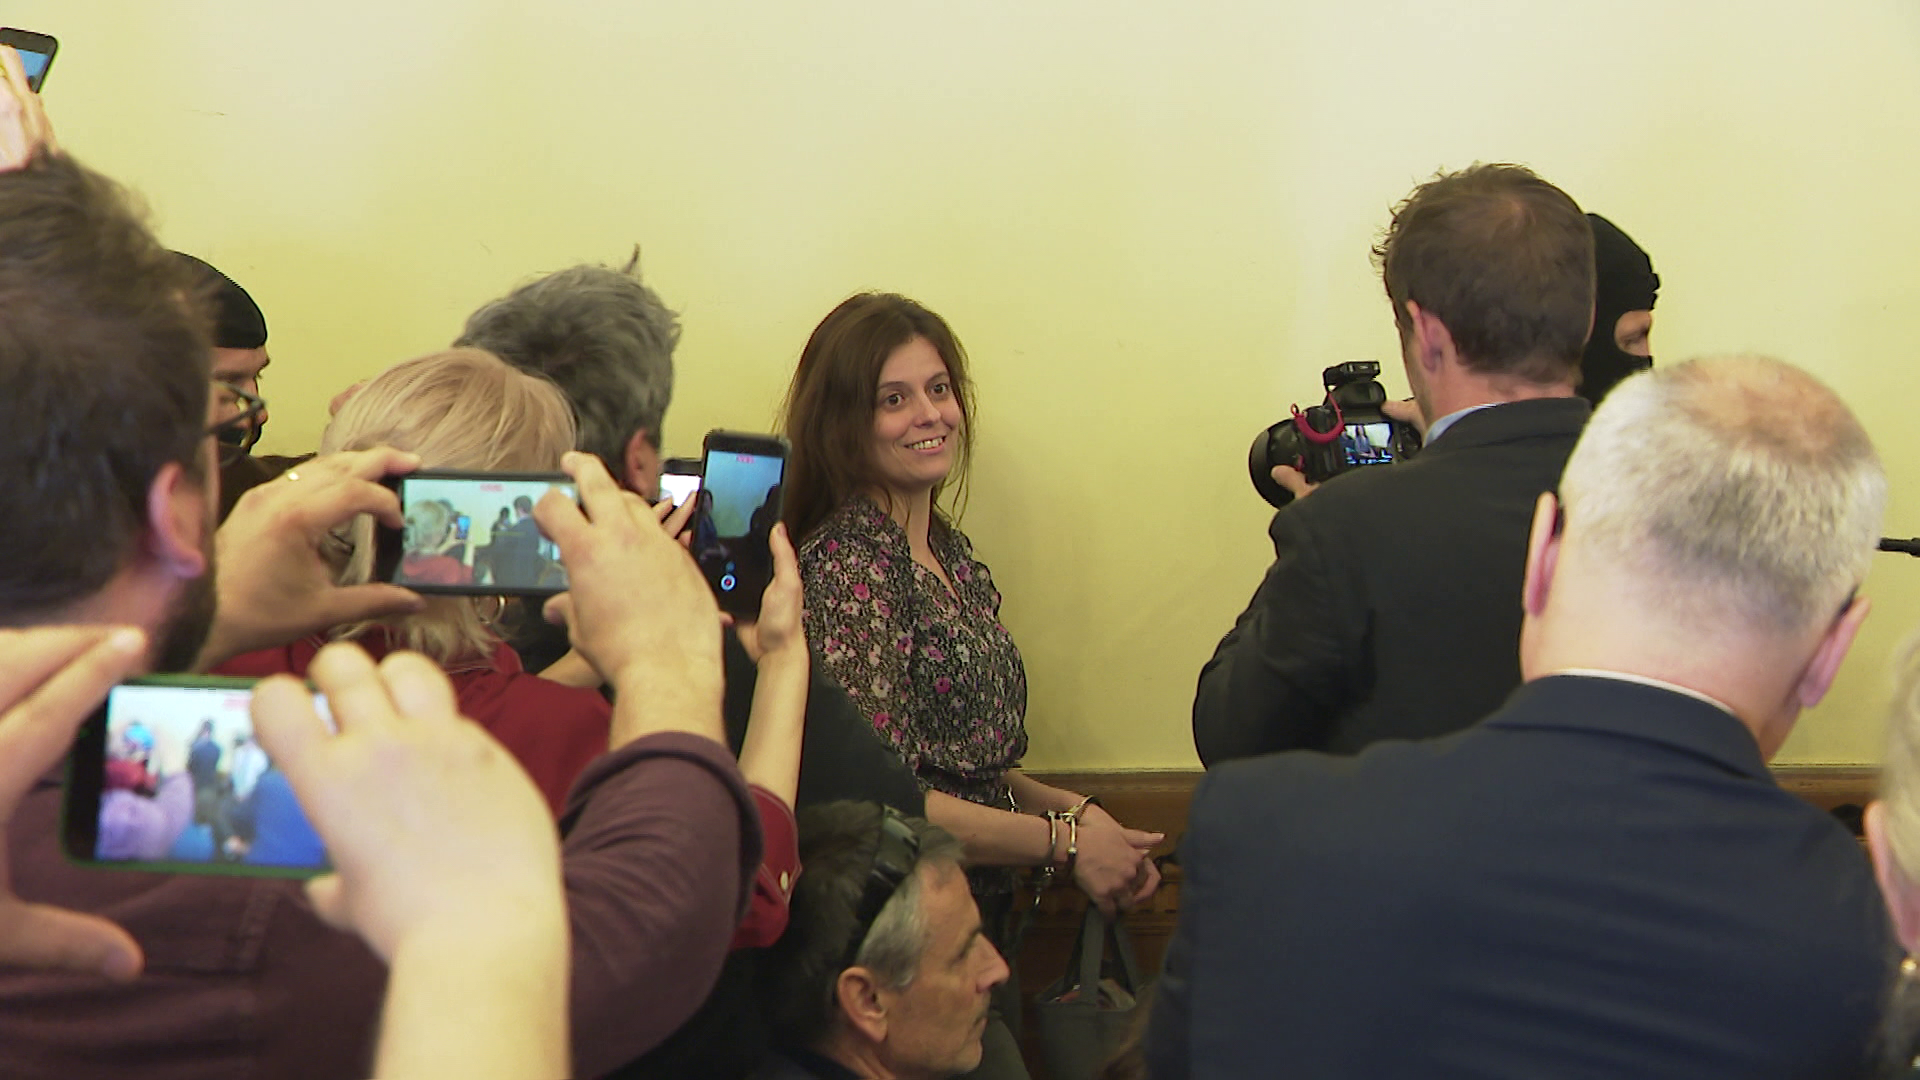 Megint széles mosollyal a száján lépett be a tárgyalóterembe Ilaria Salis + videó